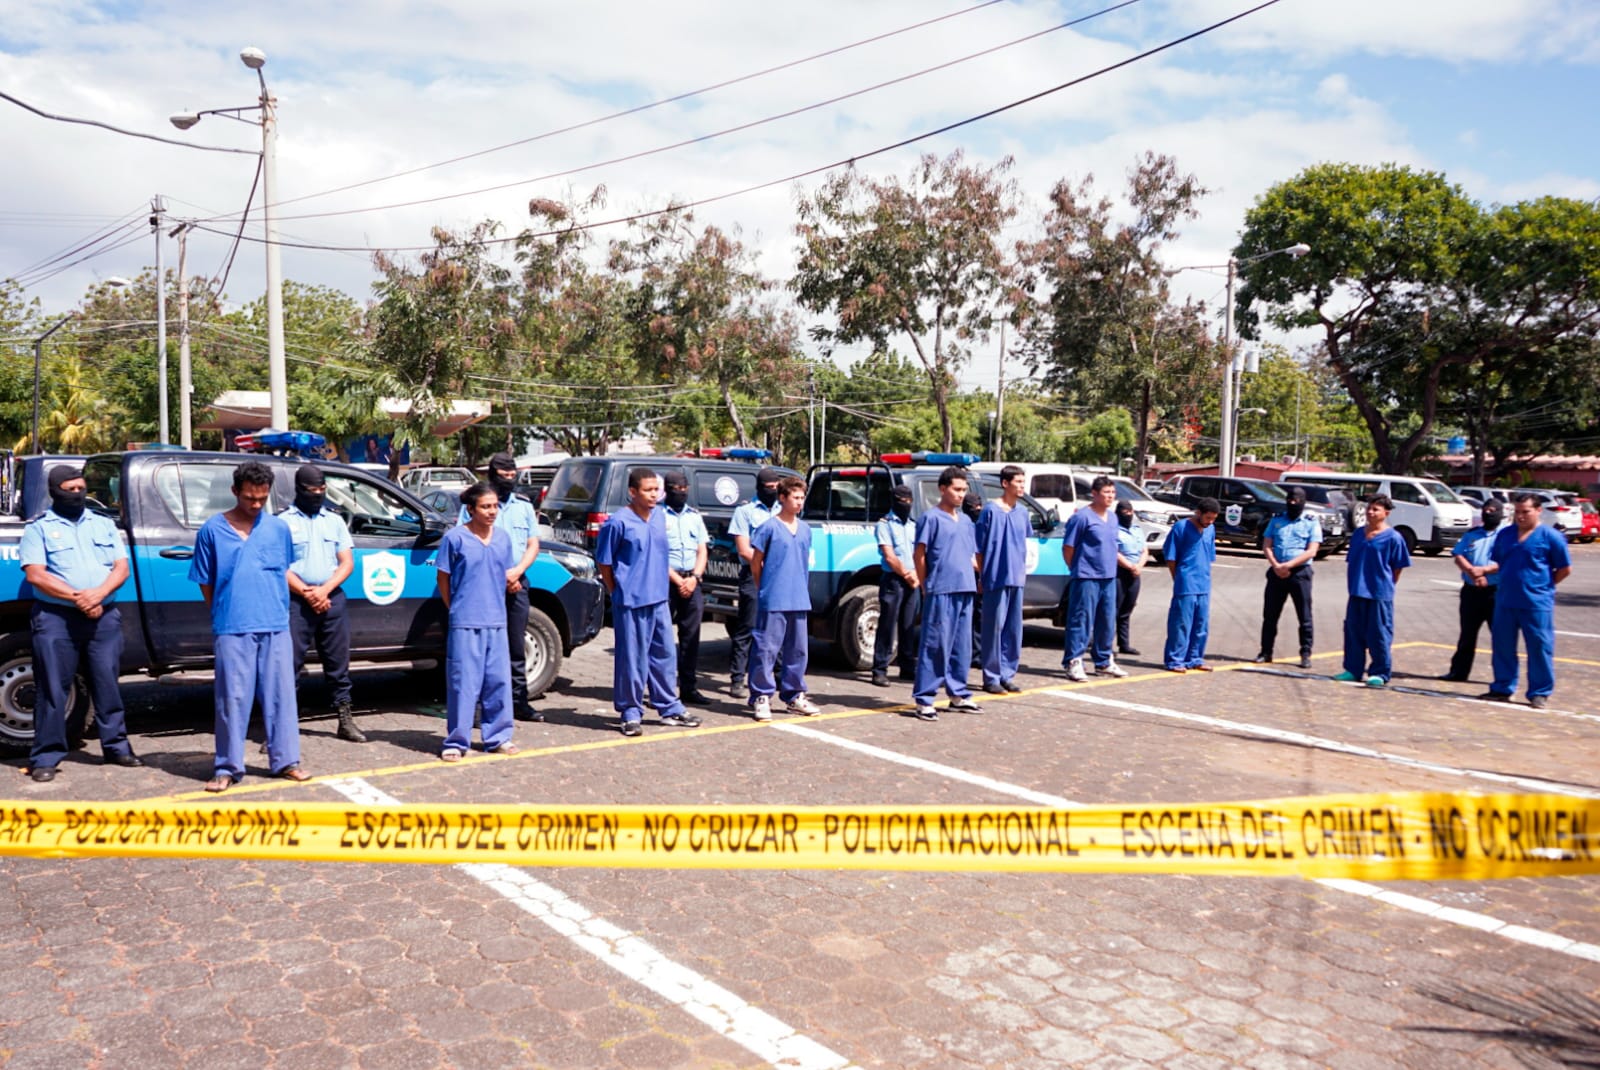 Policía Nacional capturó 7 autores homicidas